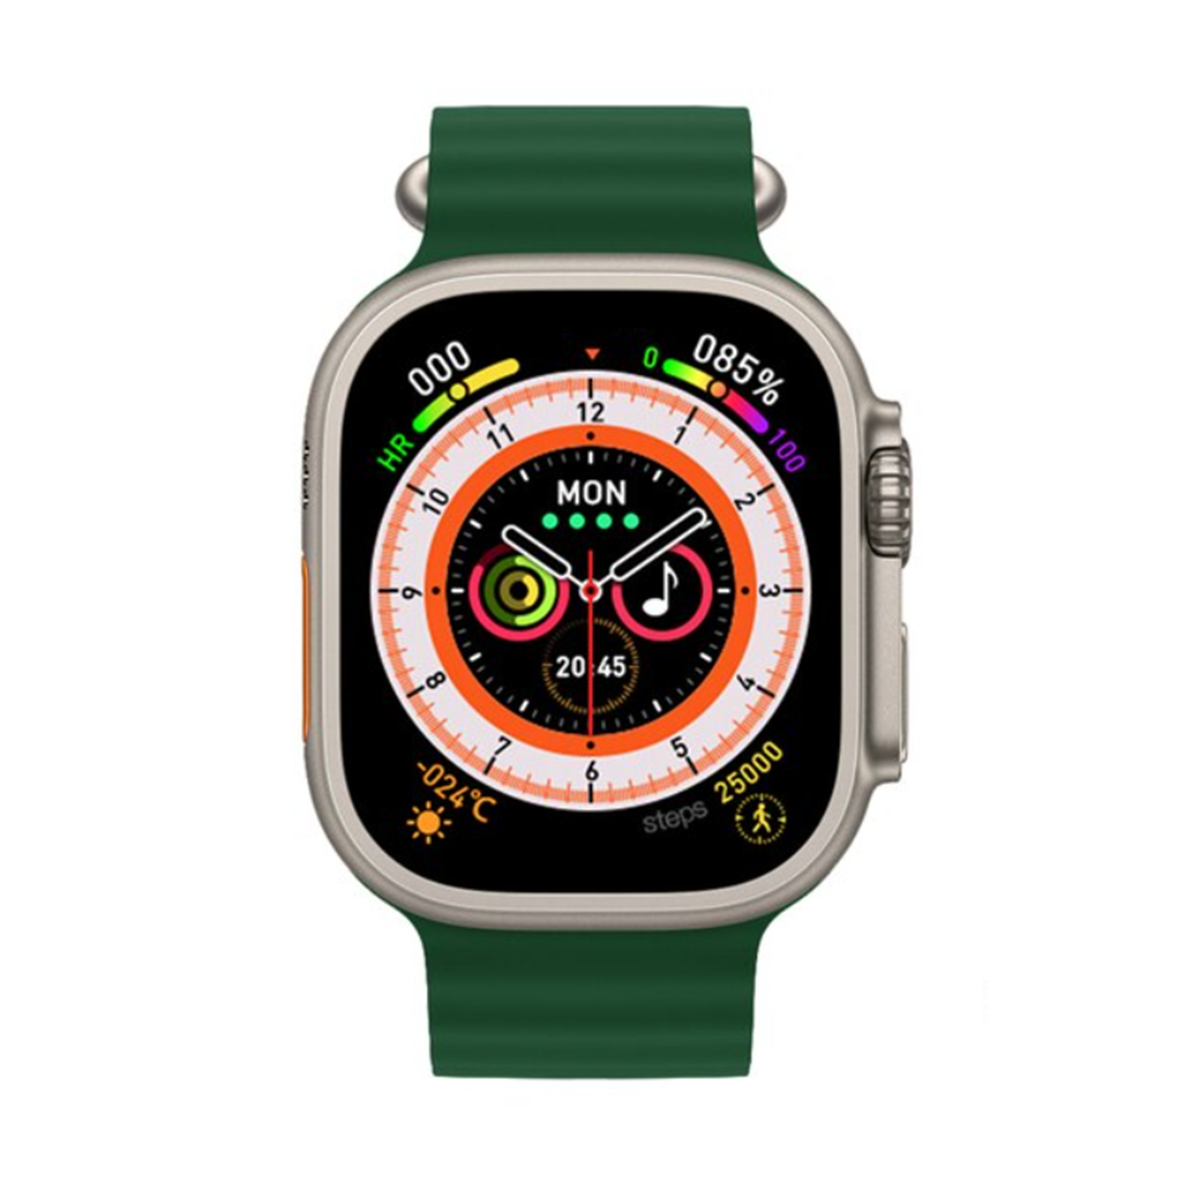 Reloj Inteligente Smartwatch Smartek Sw-wk8 Ultra Serie 8,bt, Llamadas, Carga Inalámbrica - verde - 